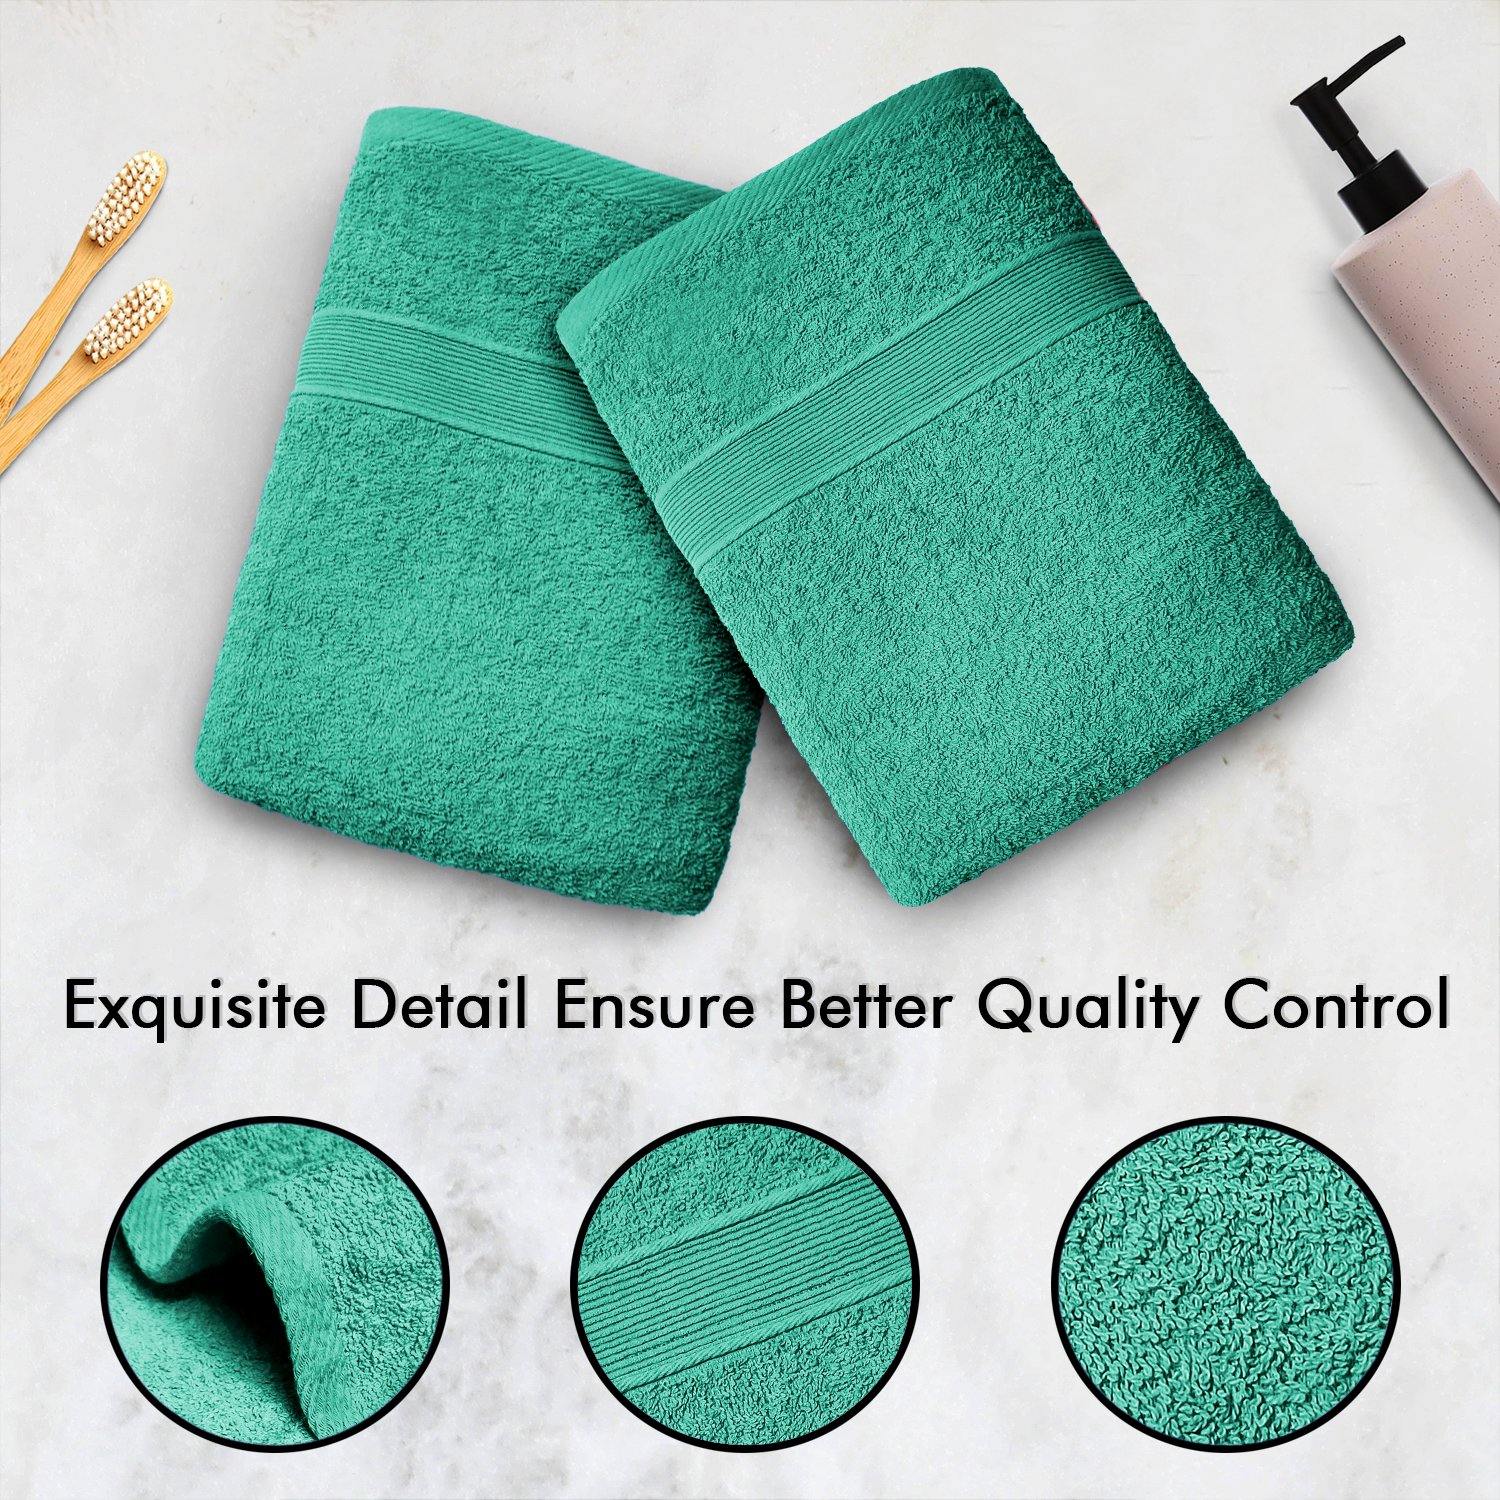 Lavish Touch 400 GSM 100% Cotton 4 Pack Bath Sheets Set - Kea Global